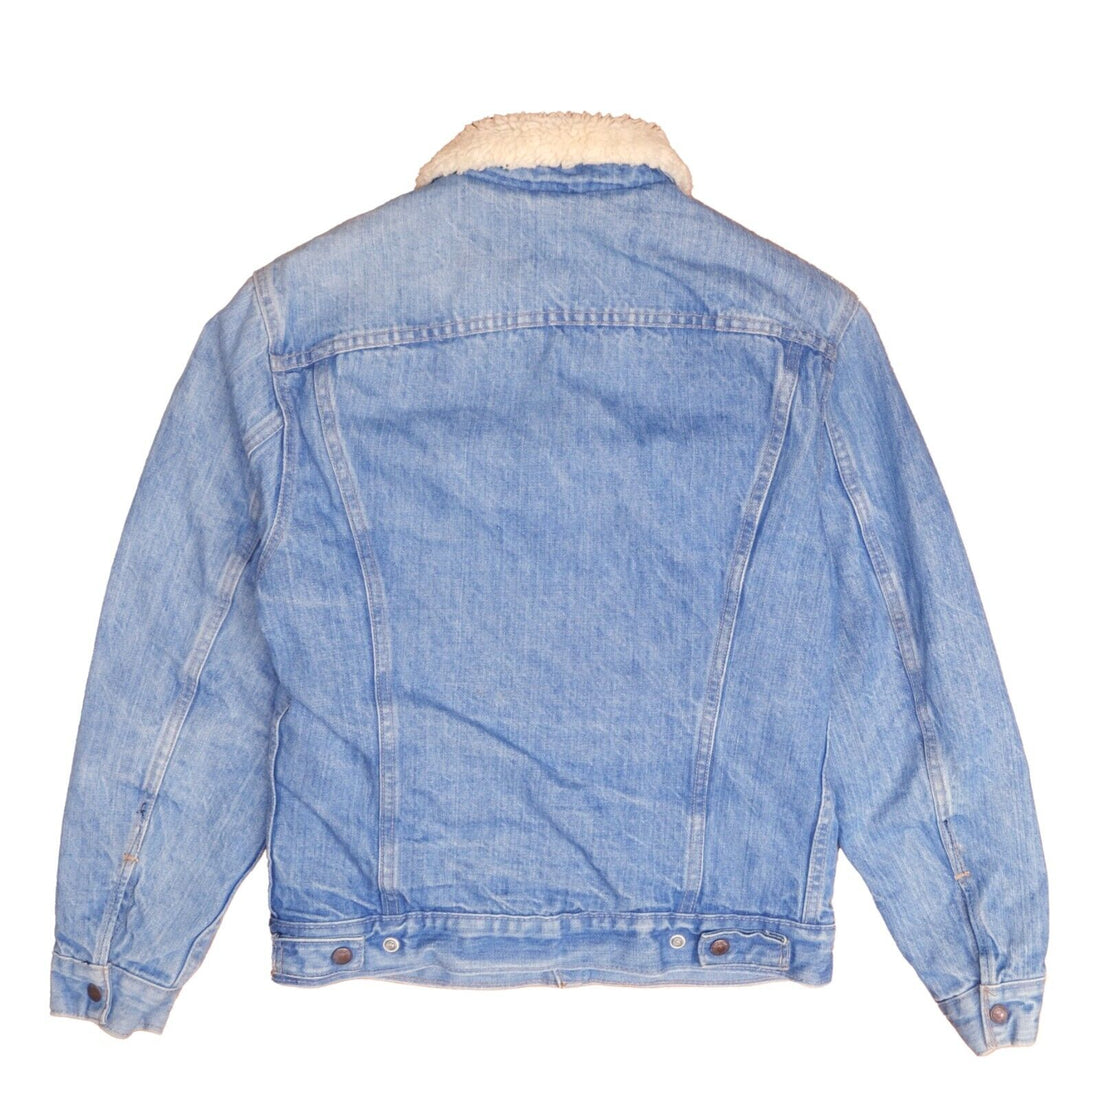 Vintage Levi Strauss & Co Denim Jean Trucker Jacket Size 36 Blue Sherpa Lined